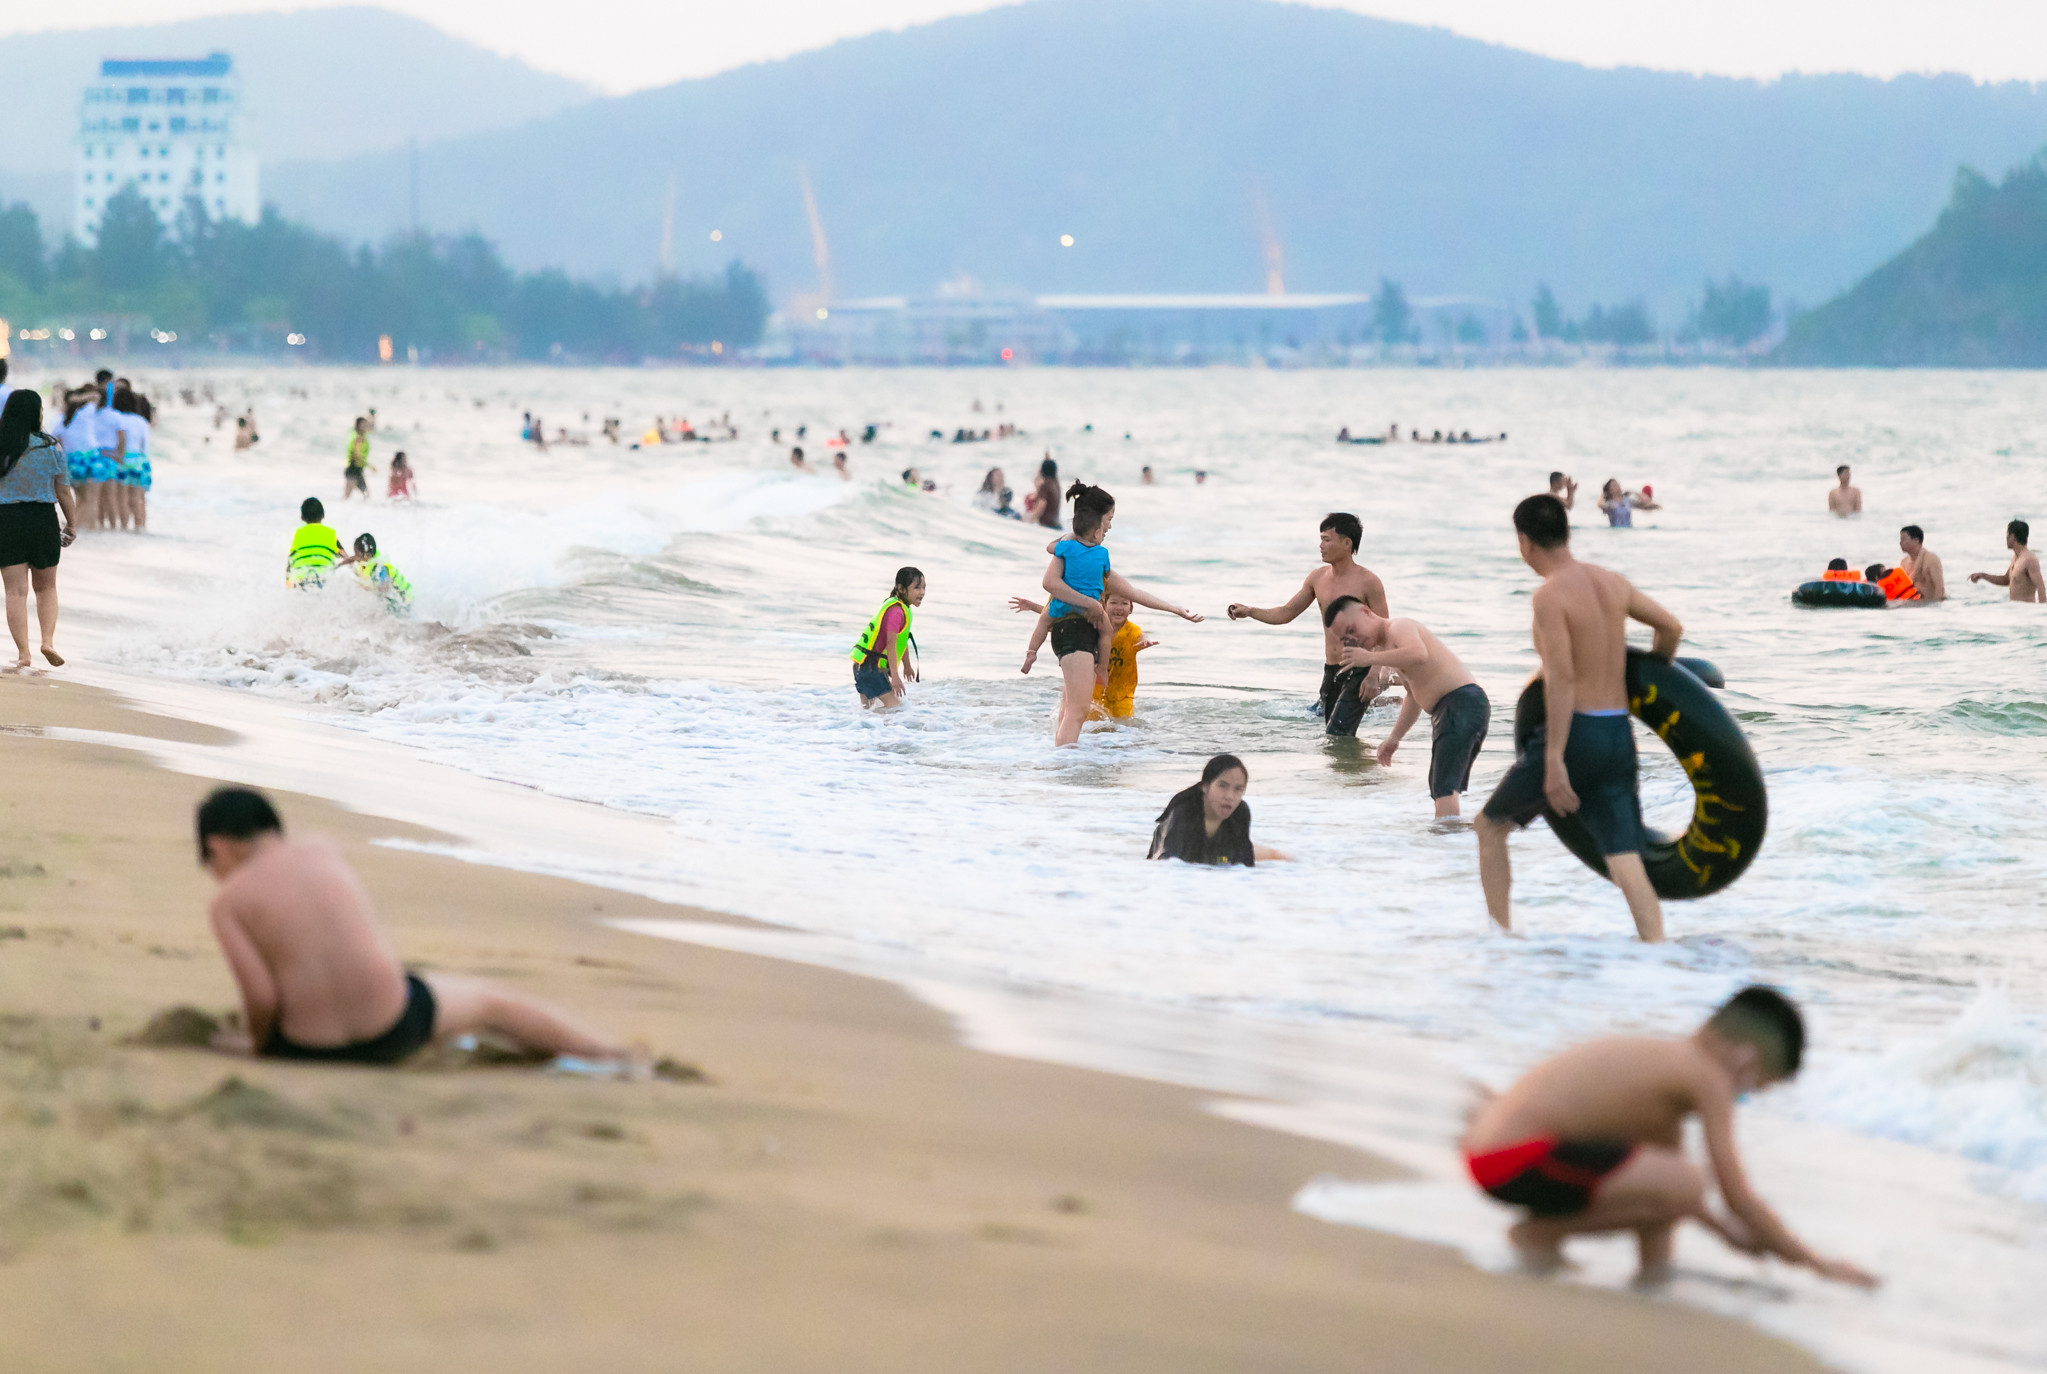 Sau khi du lịch Việt Nam được phục hồi sau đại dịch, Cửa Lò đã và đang đón lượng lớn du khách về với mảnh đất này để được thả mình vào dòng nước mát lạnh của bãi biển xinh đẹp bậc nhất miền Trung. Ảnh: Đức Anh